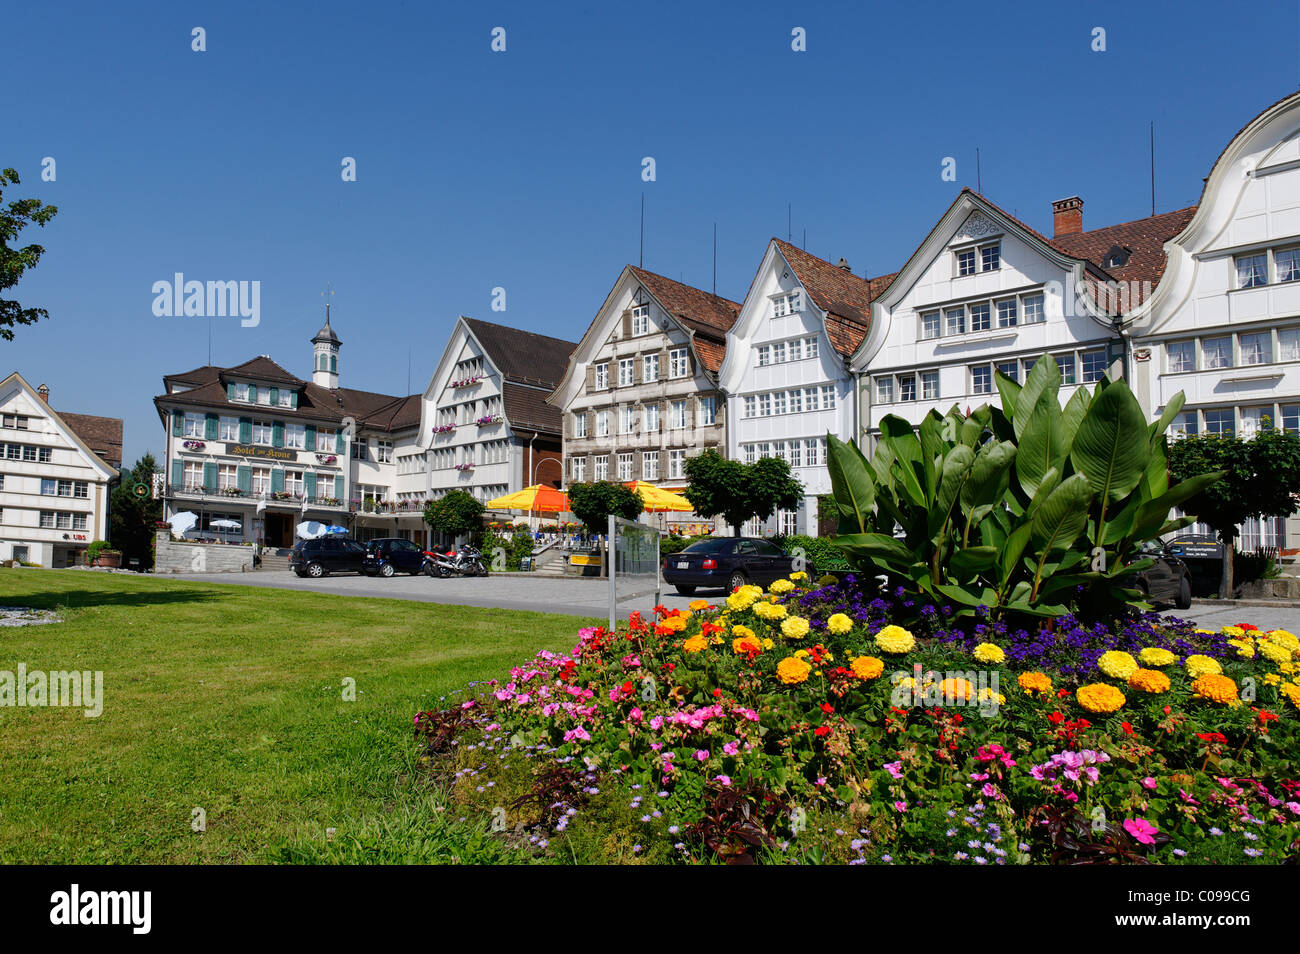 Case di legno nella piazza del villaggio, Gais, Ausserrhoden, cantone di Appenzell, Svizzera, Europa Foto Stock